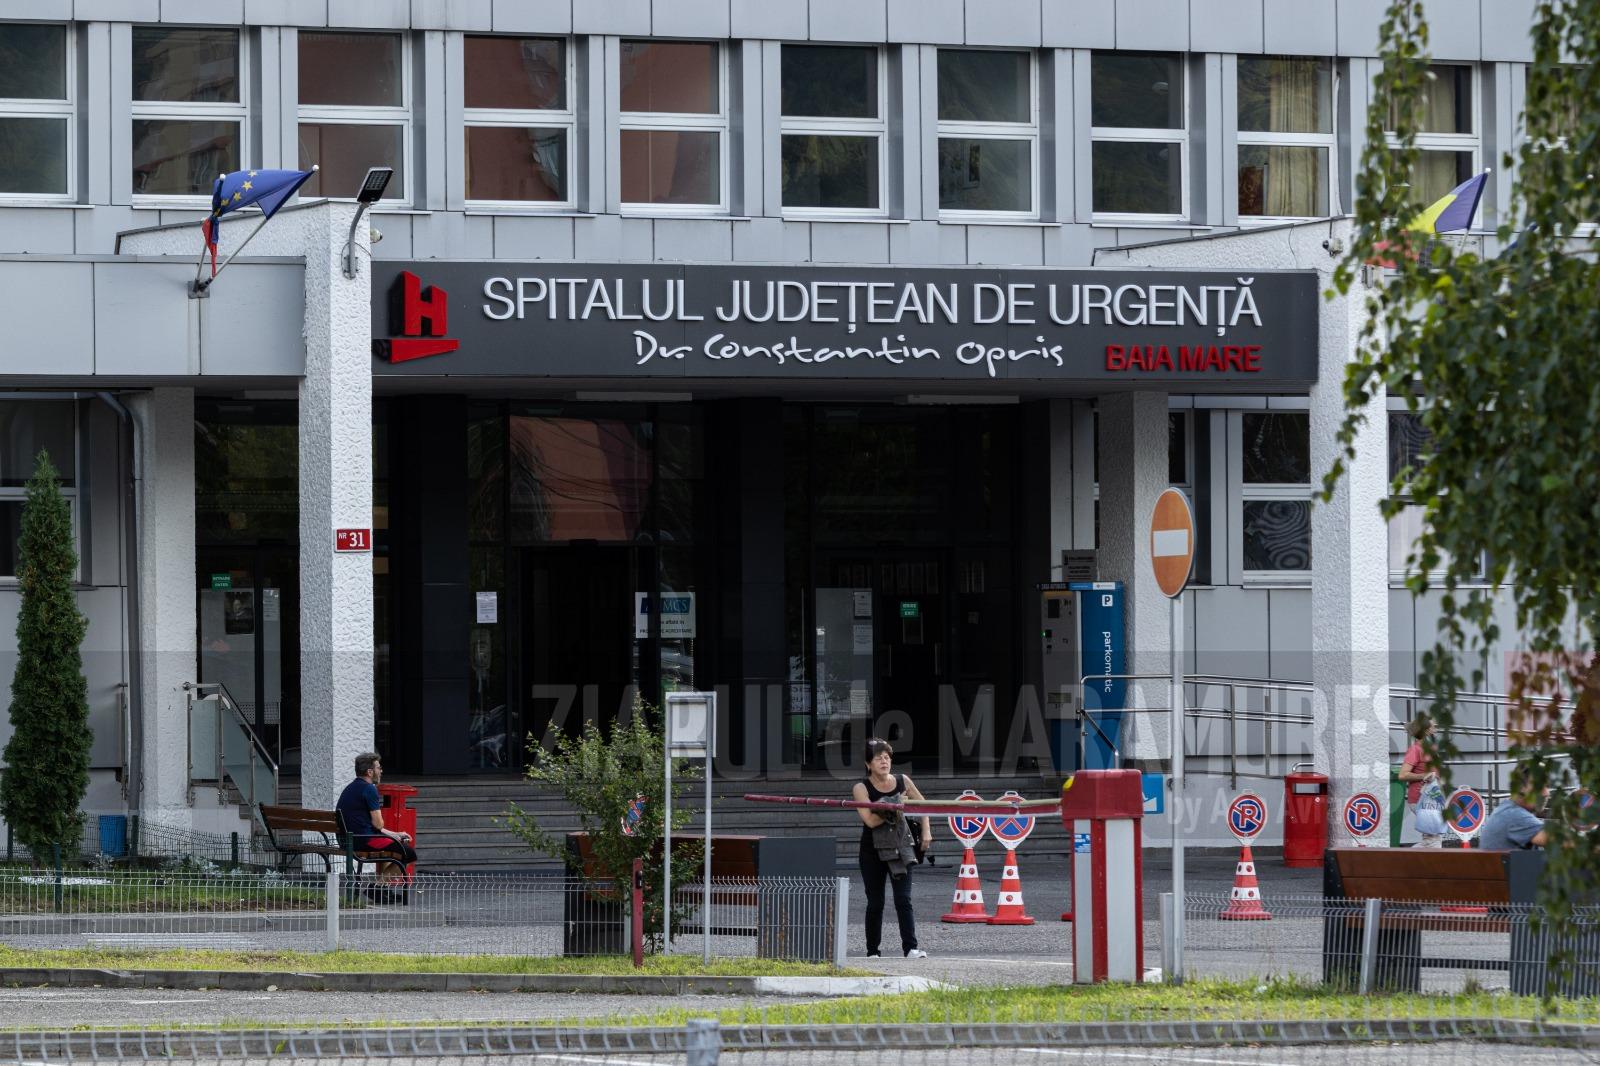 ITM Maramureș: A fost reluată acțiunea de verificare a unităților spitalicești din județ